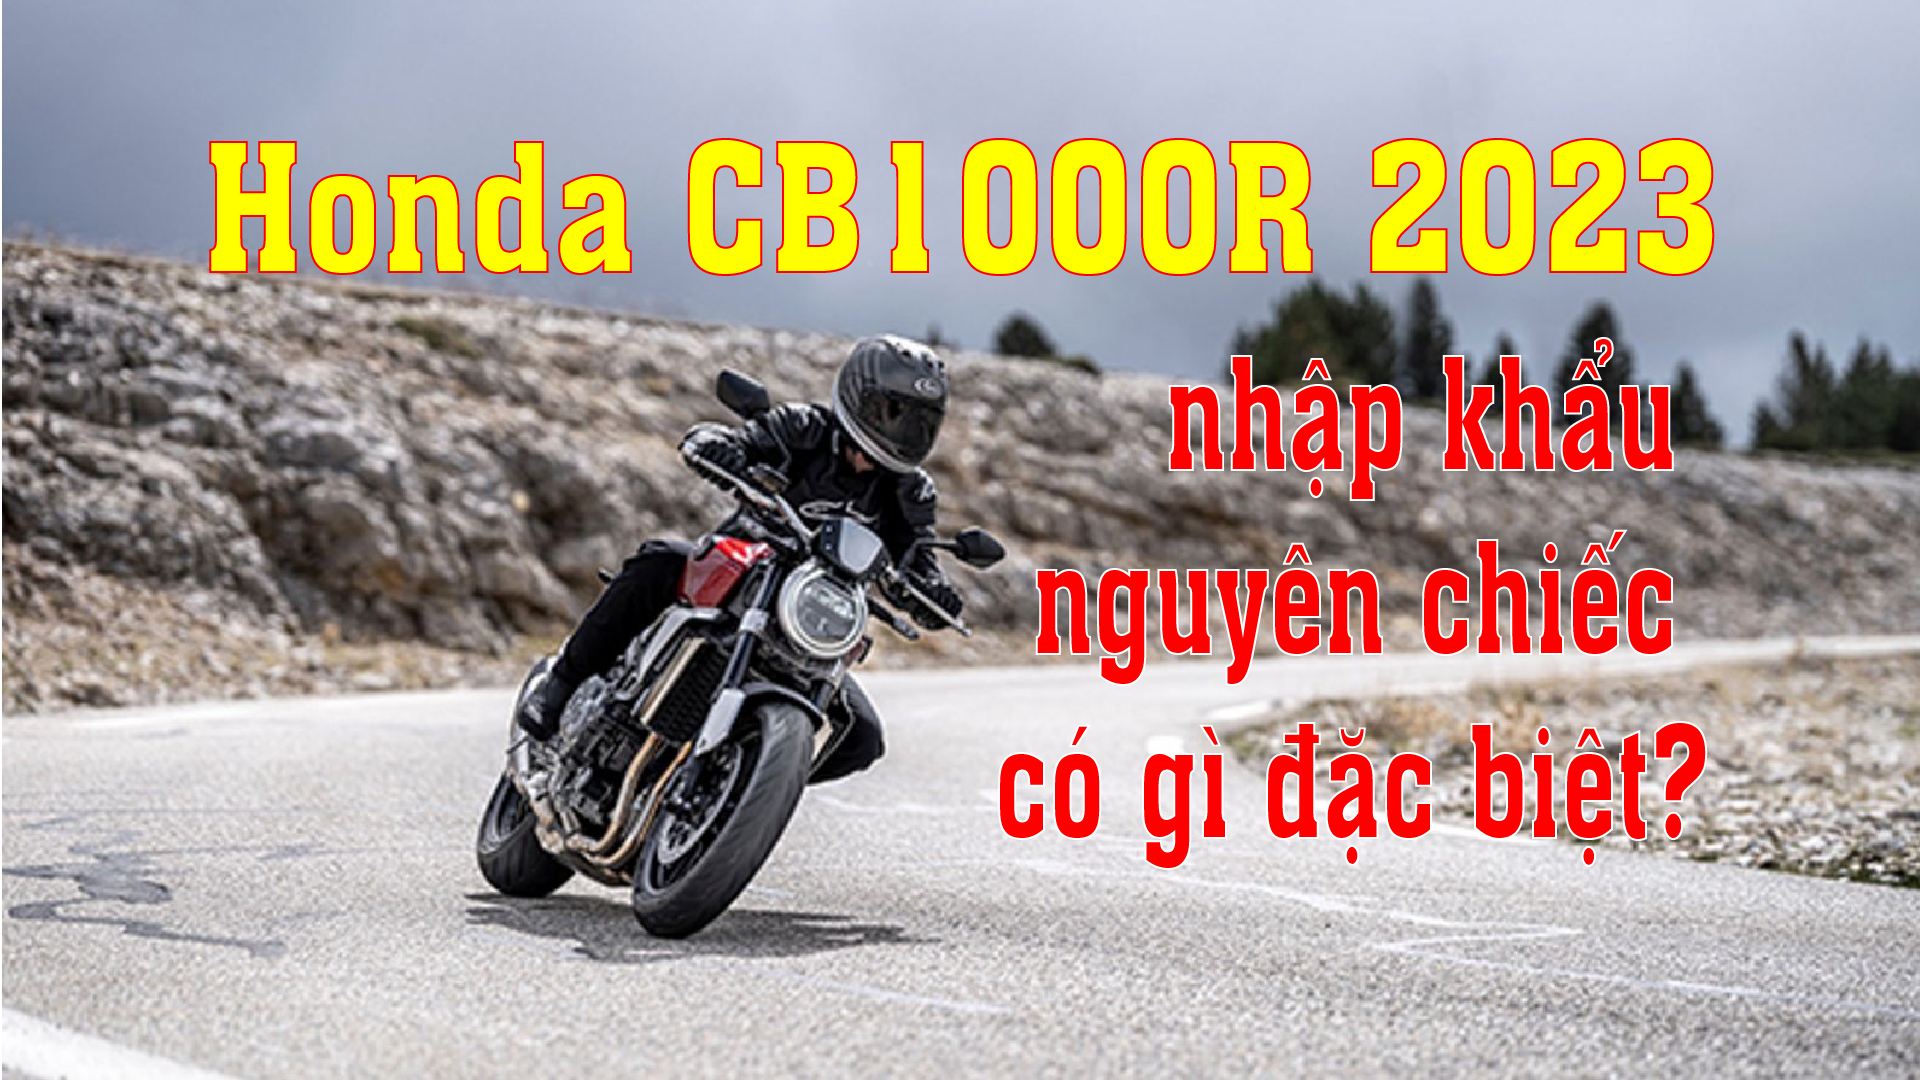 Honda CB1000R 2023 nhập khẩu nguyên chiếc có gì đặc biệt?